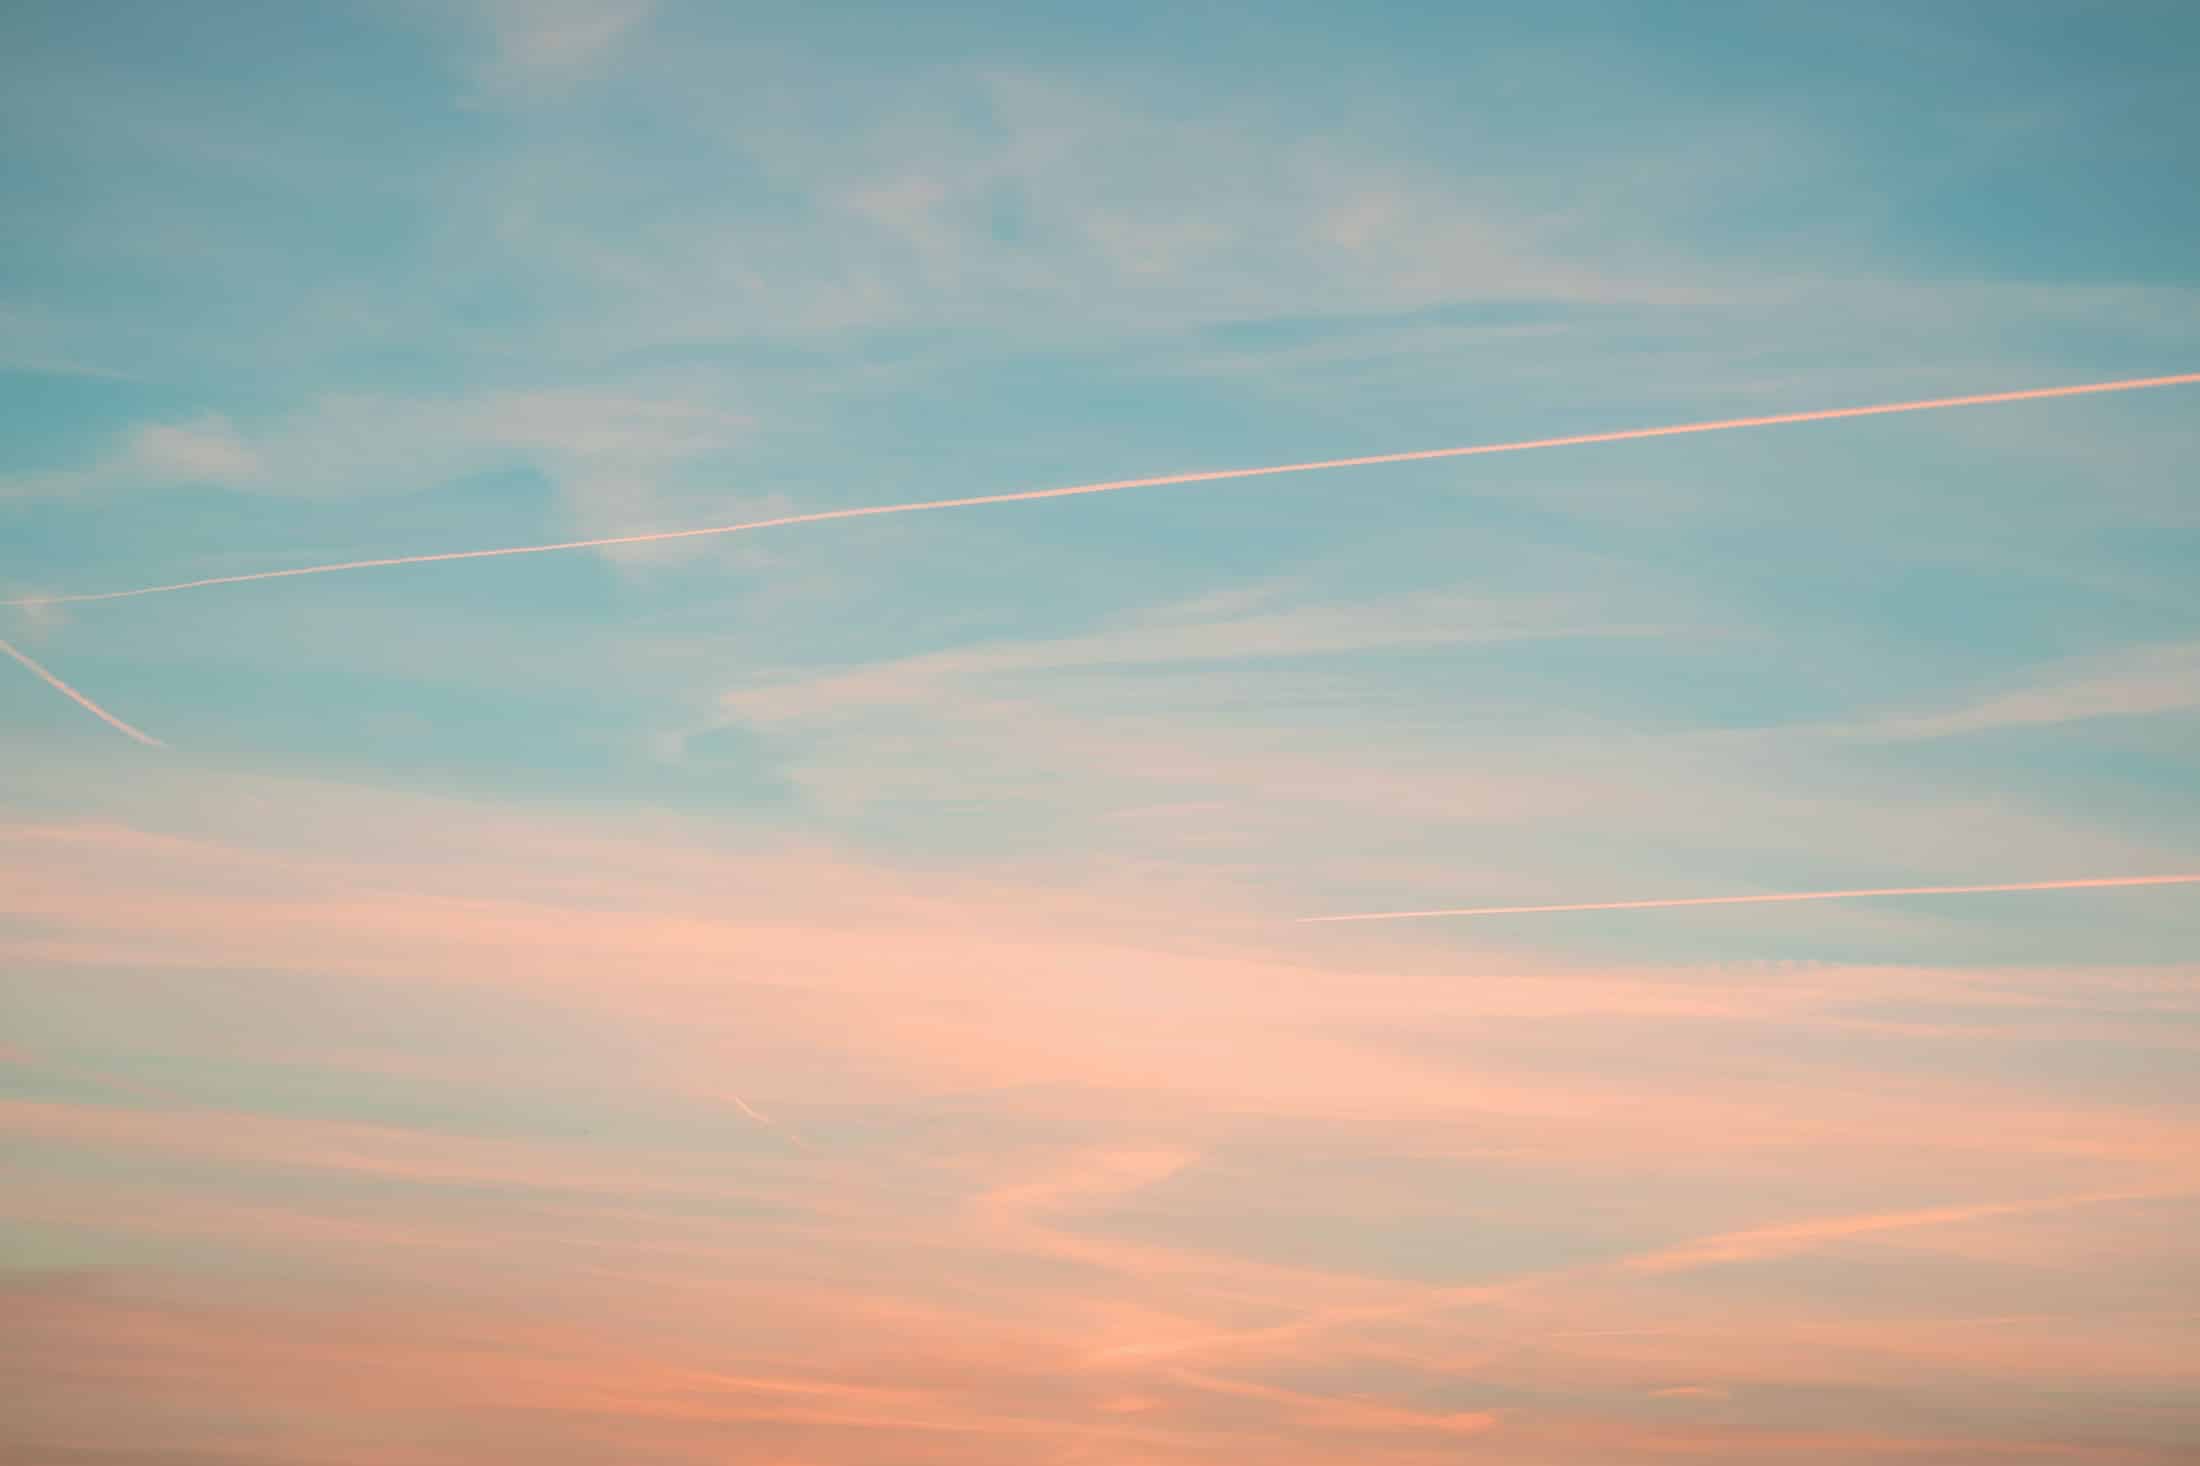 Himmel in Farben des Sonnenuntergangs mit Flugzeugstreifen